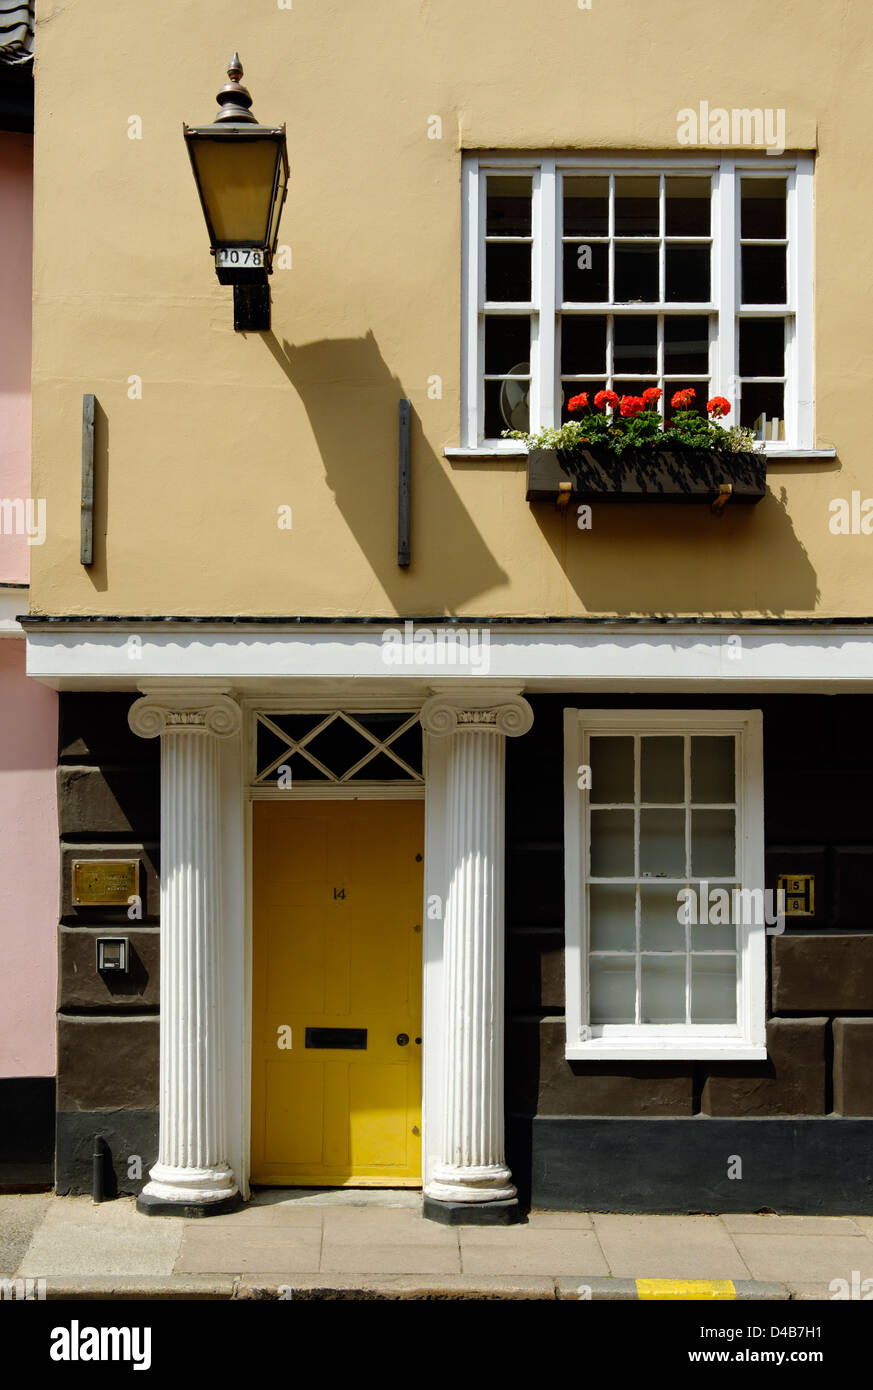 Doorway in Norwich, England Stock Photo